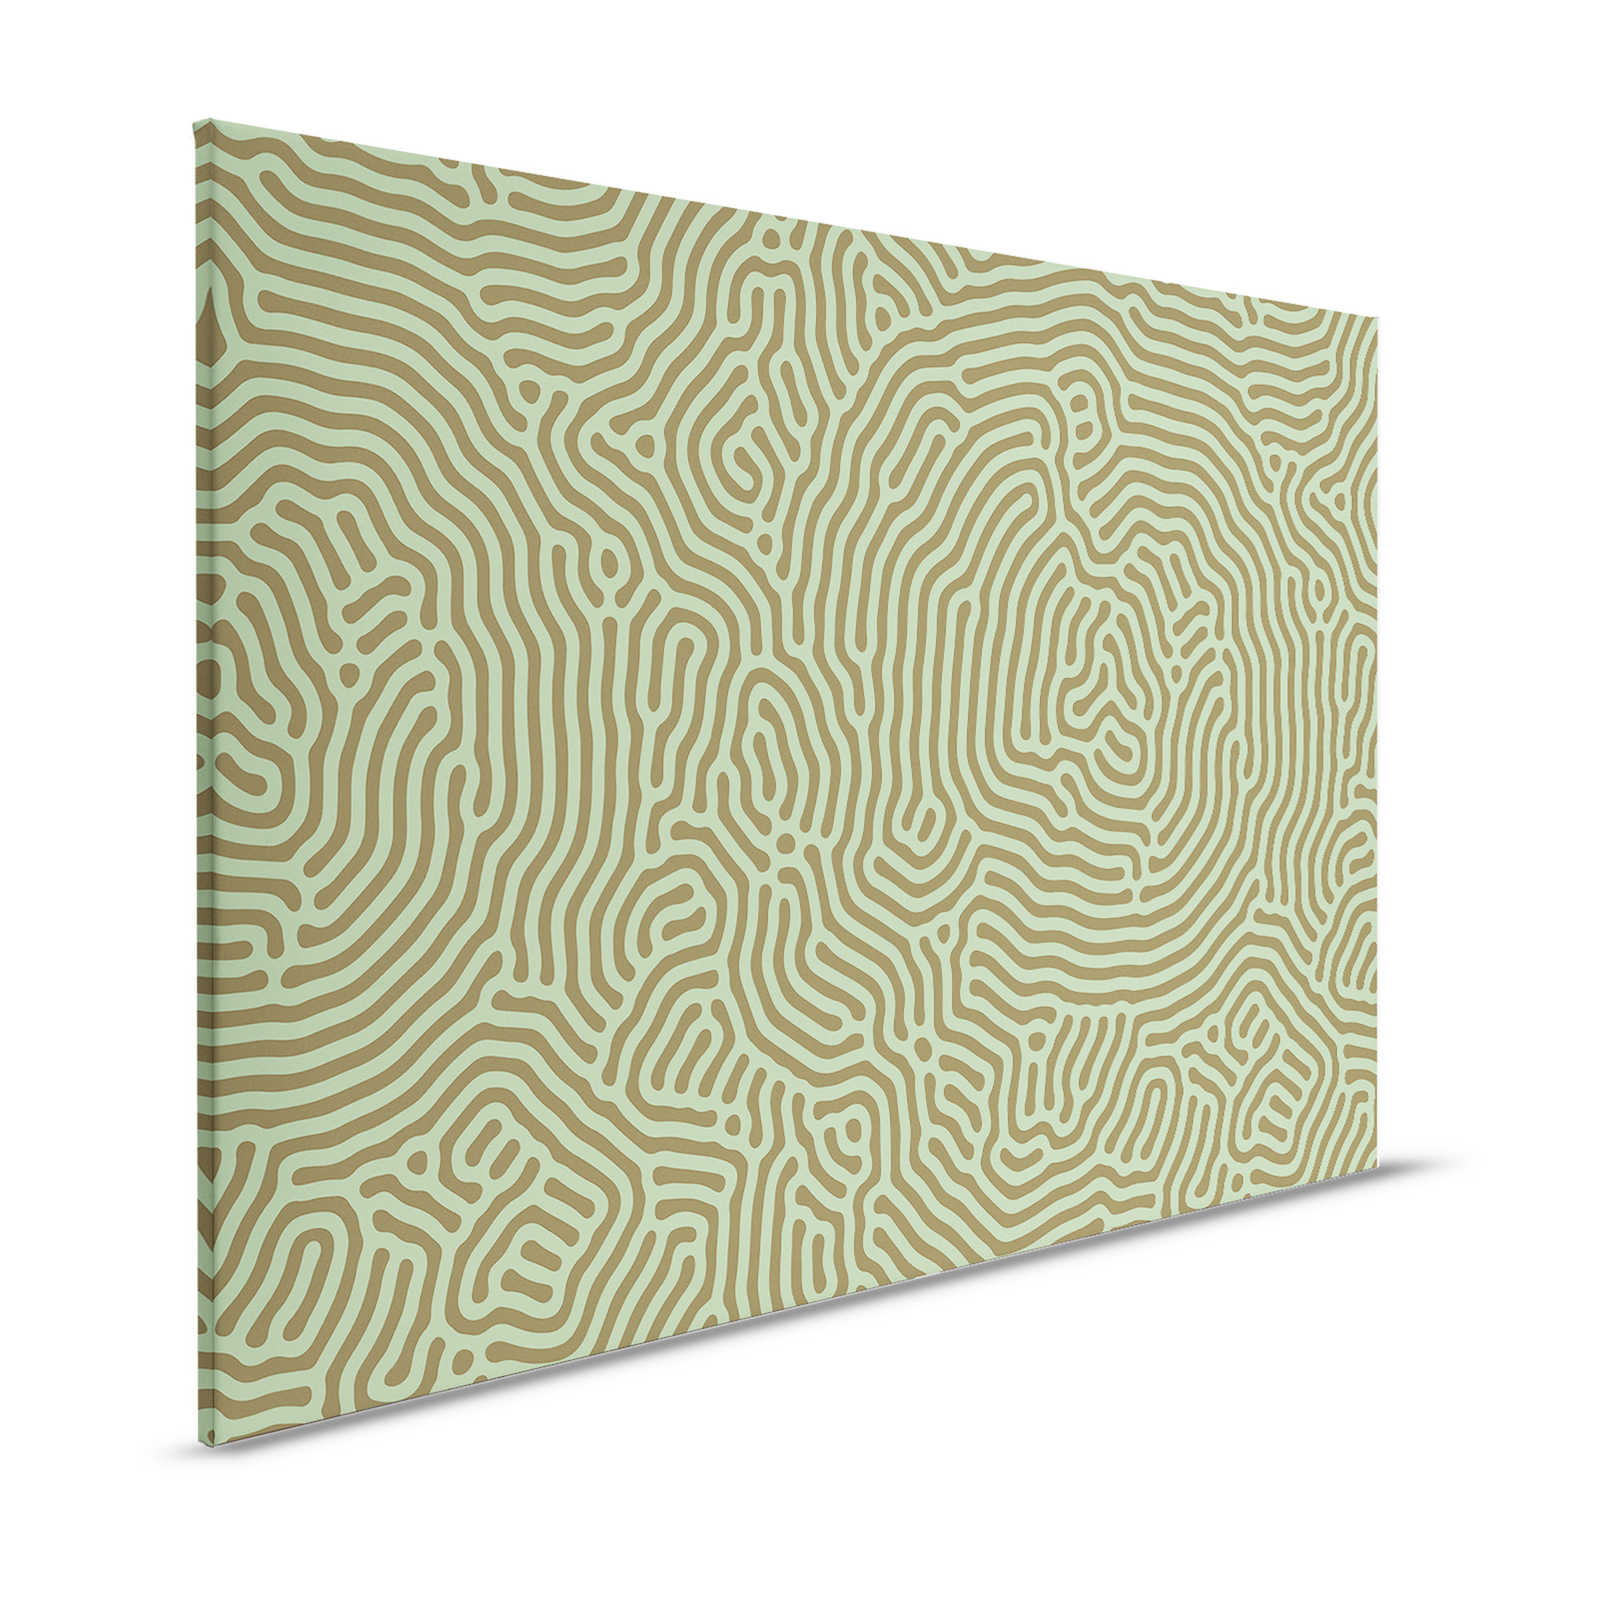 Sahel 1 - Toile verte motif labyrinthe vert sauge - 1,20 m x 0,80 m
